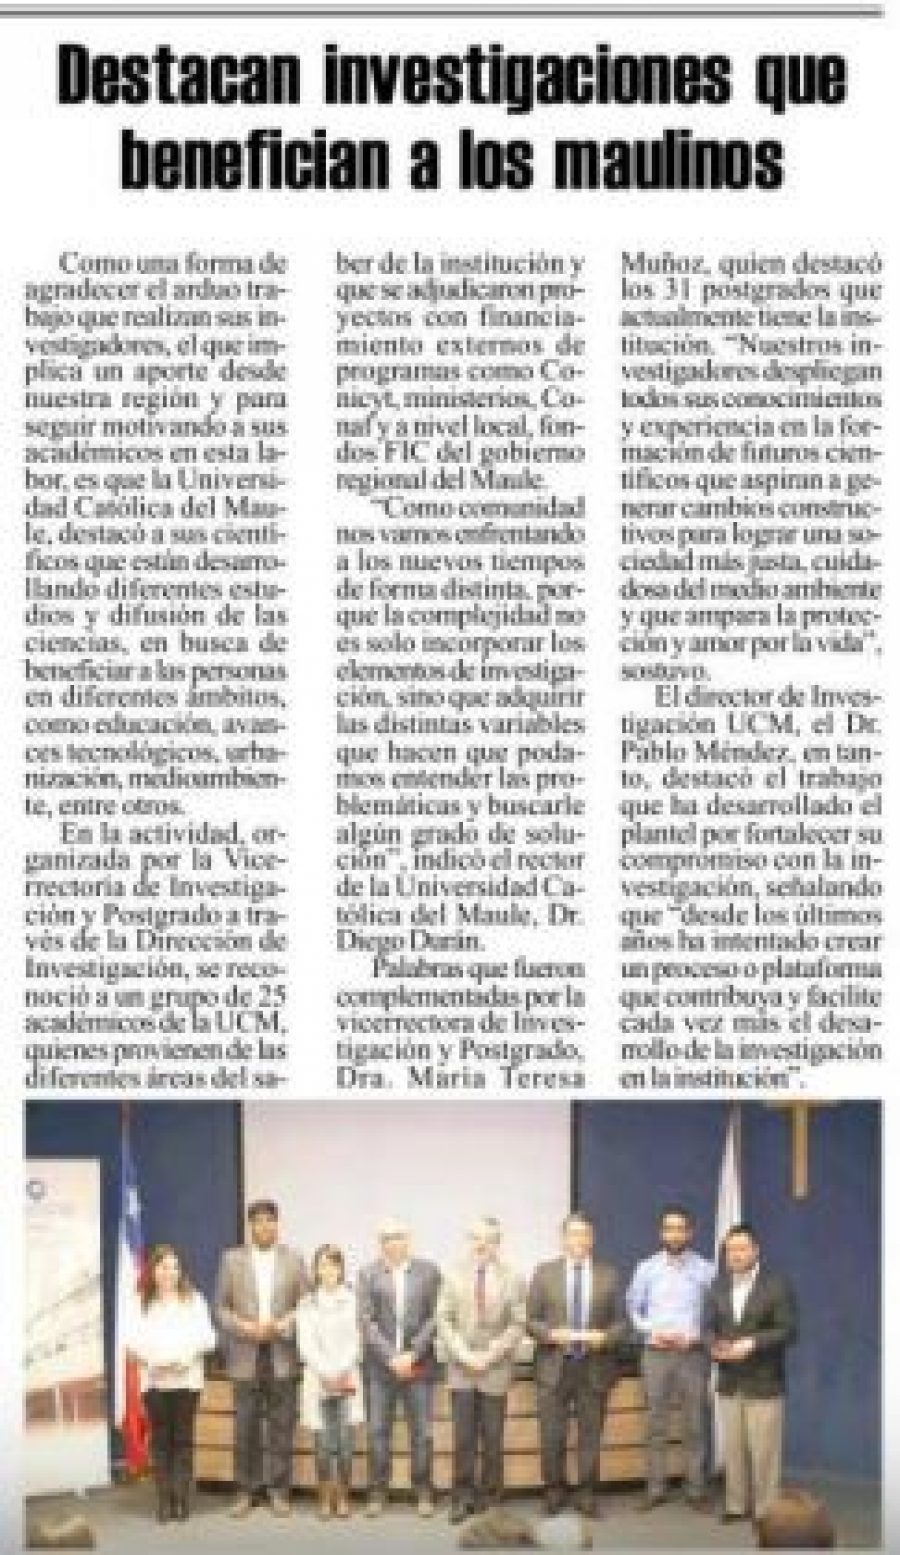 27 de marzo en Diario El Heraldo: “Destacan investigaciones que benefician a los maulinos”